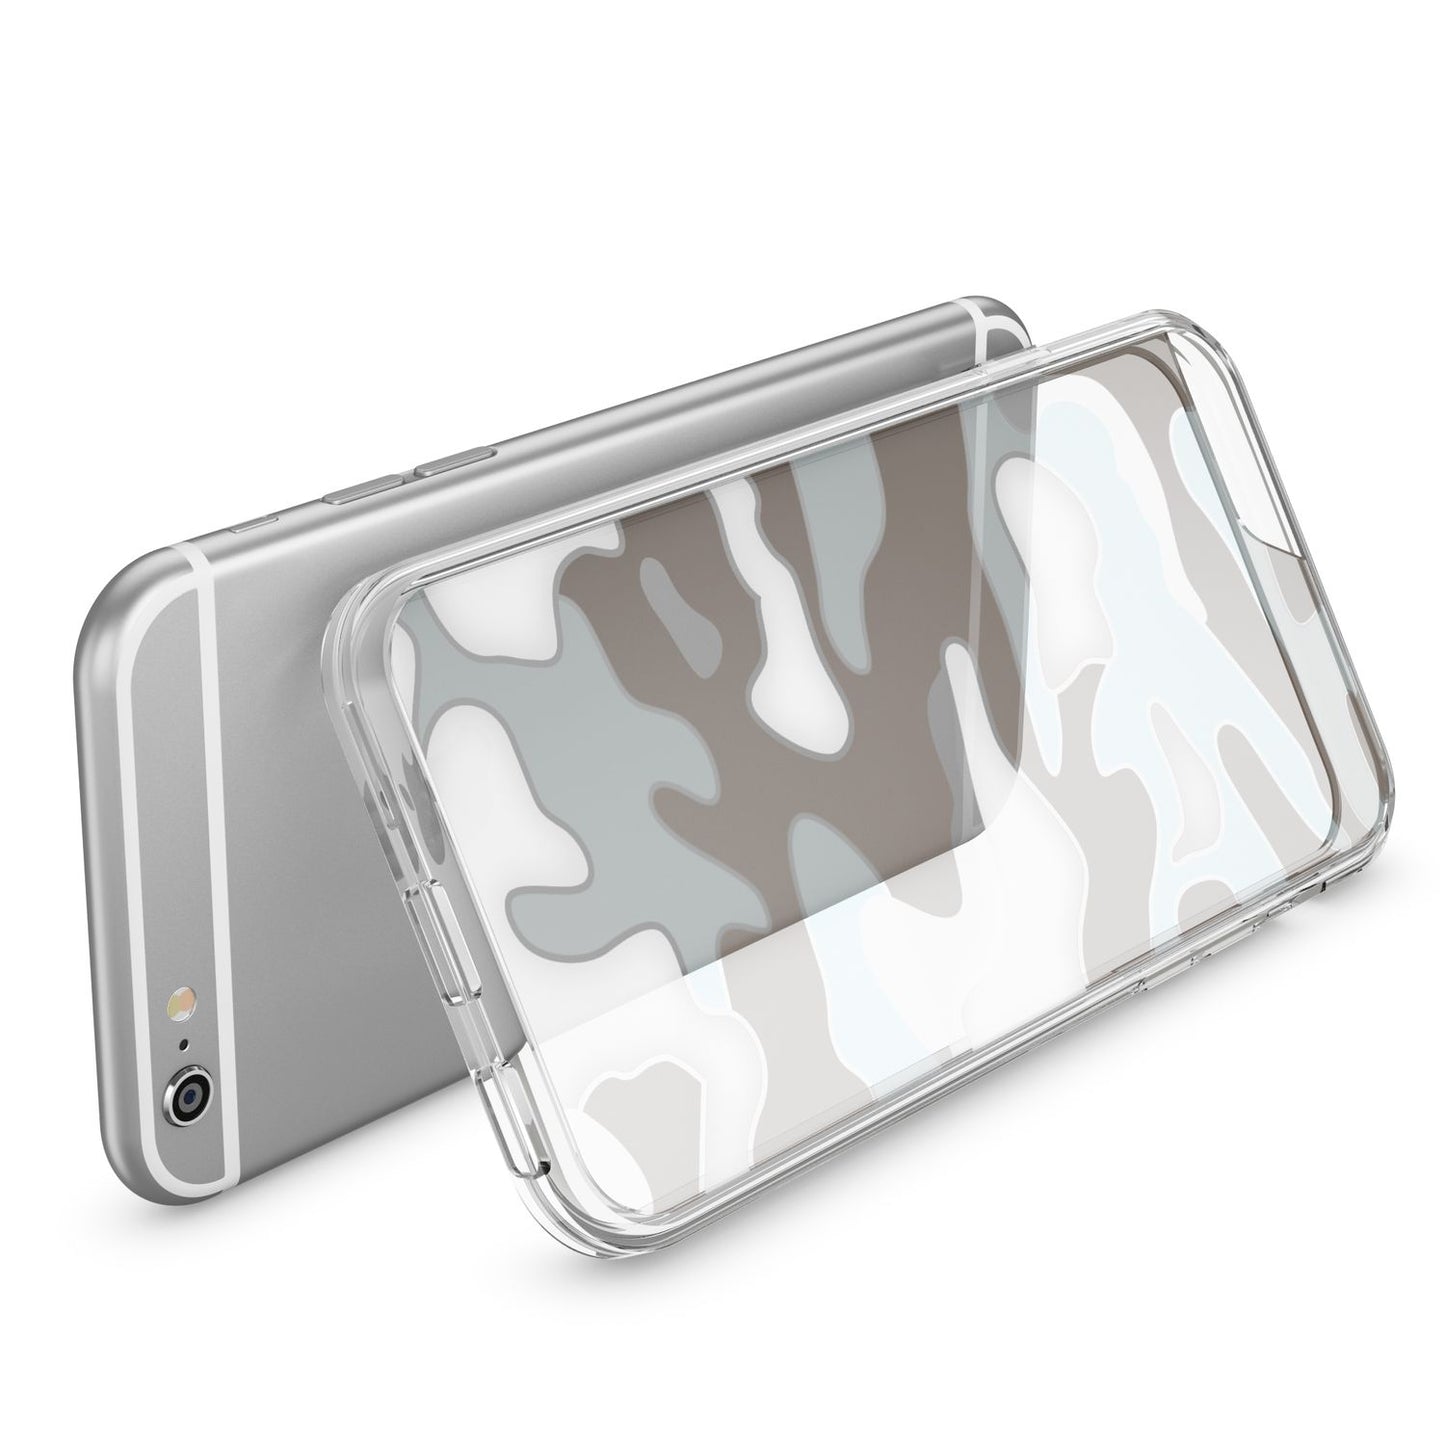 NALIA Handy Hülle für iPhone SE 2020 / 8 / 7, Camouflage Case Schutz Cover Etui